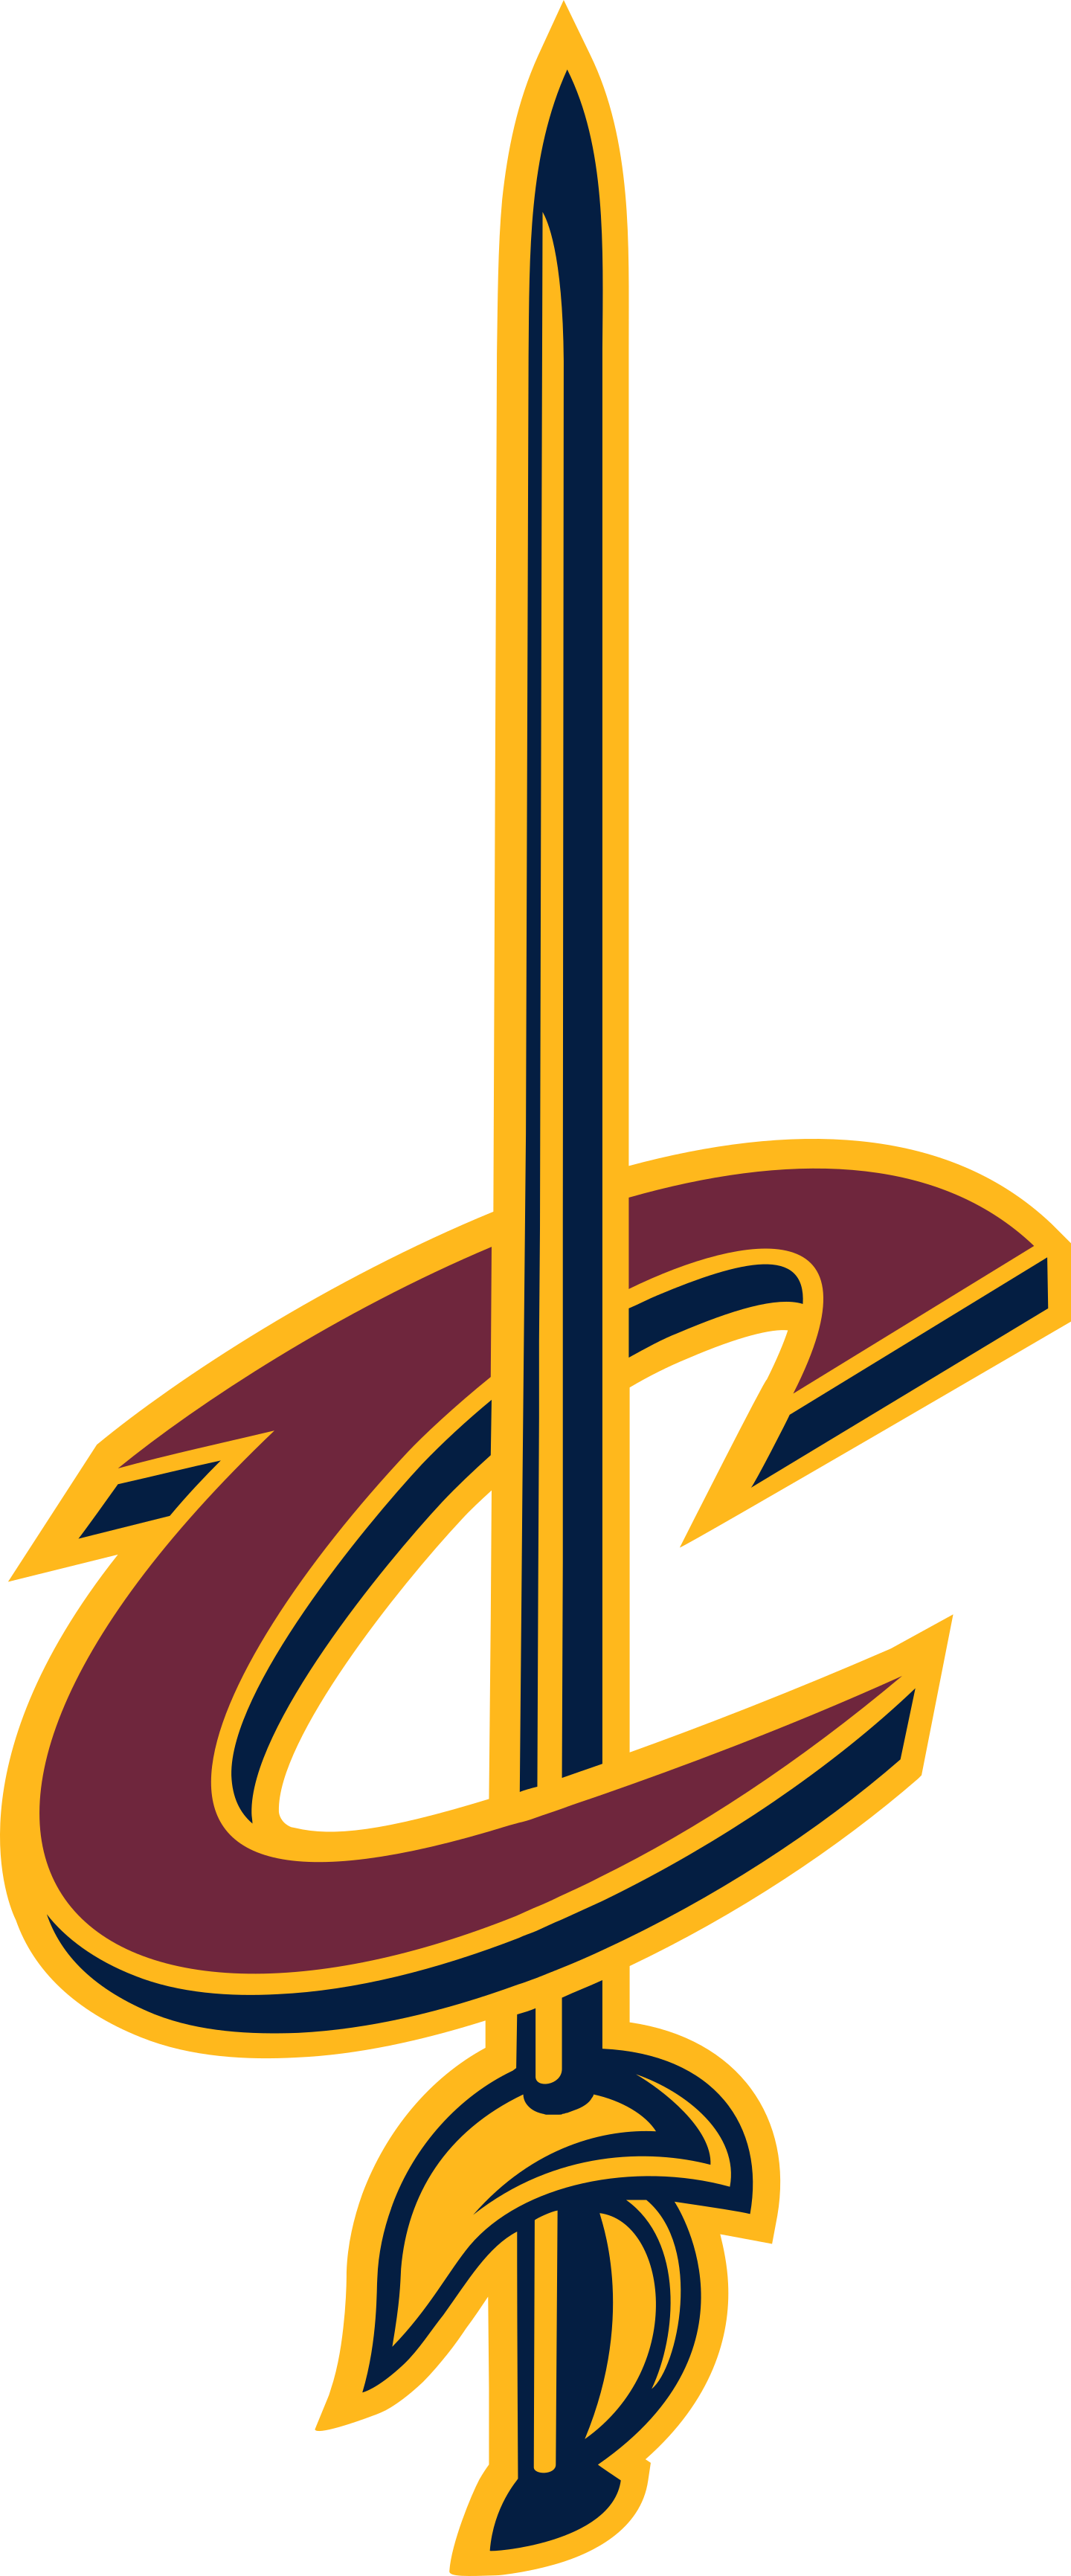 cleveland cavaliers logo 6 - Cleveland Cavaliers Logo